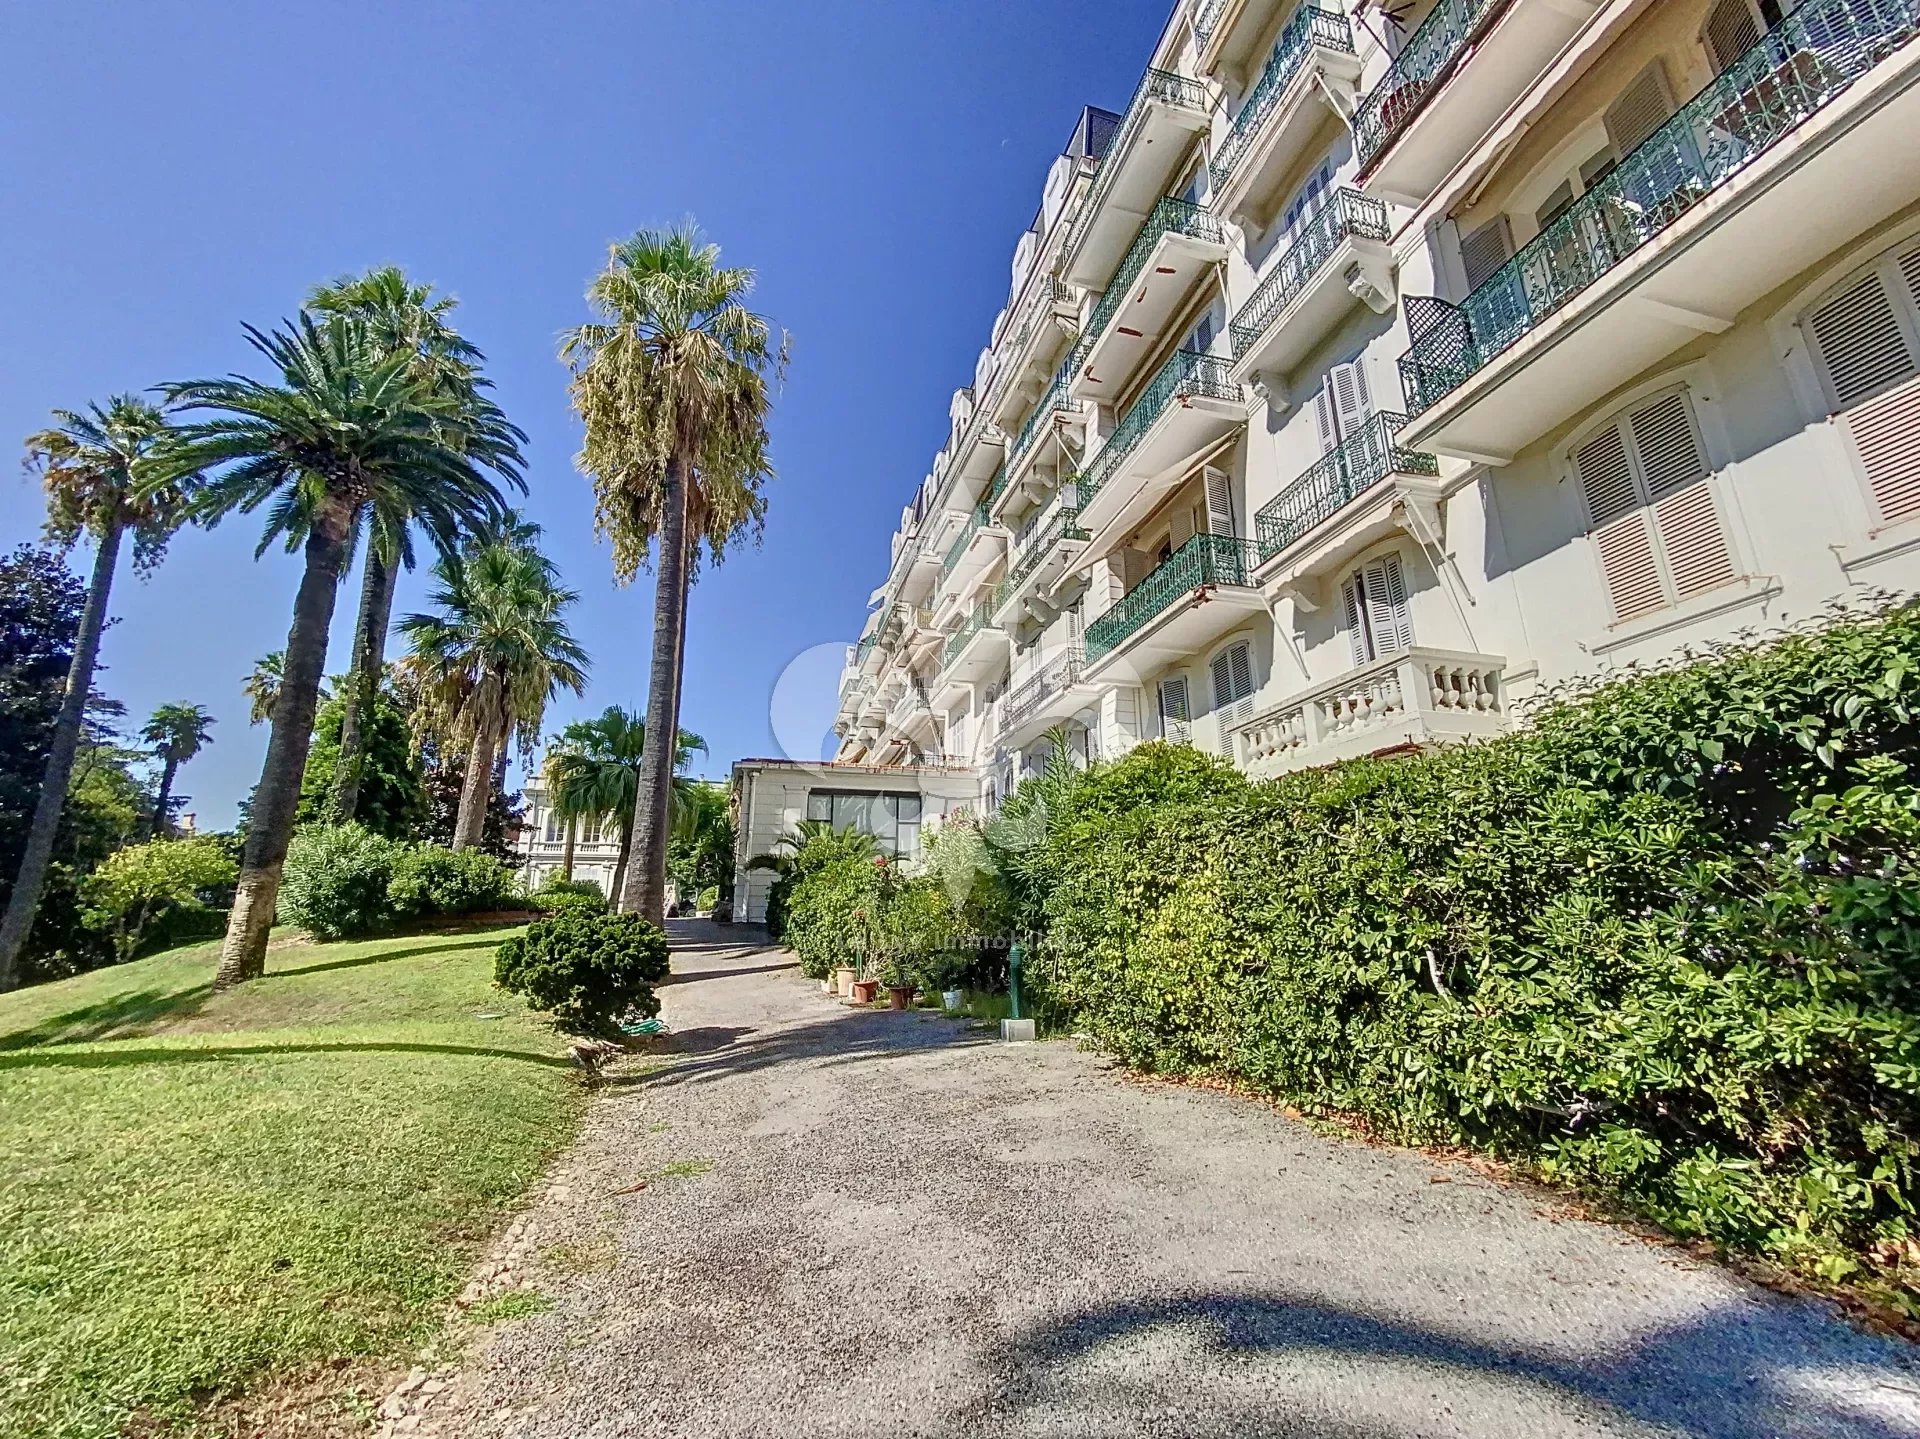 Cannes - Croix des gardes : Bel appartement dans un immeuble bourgeois